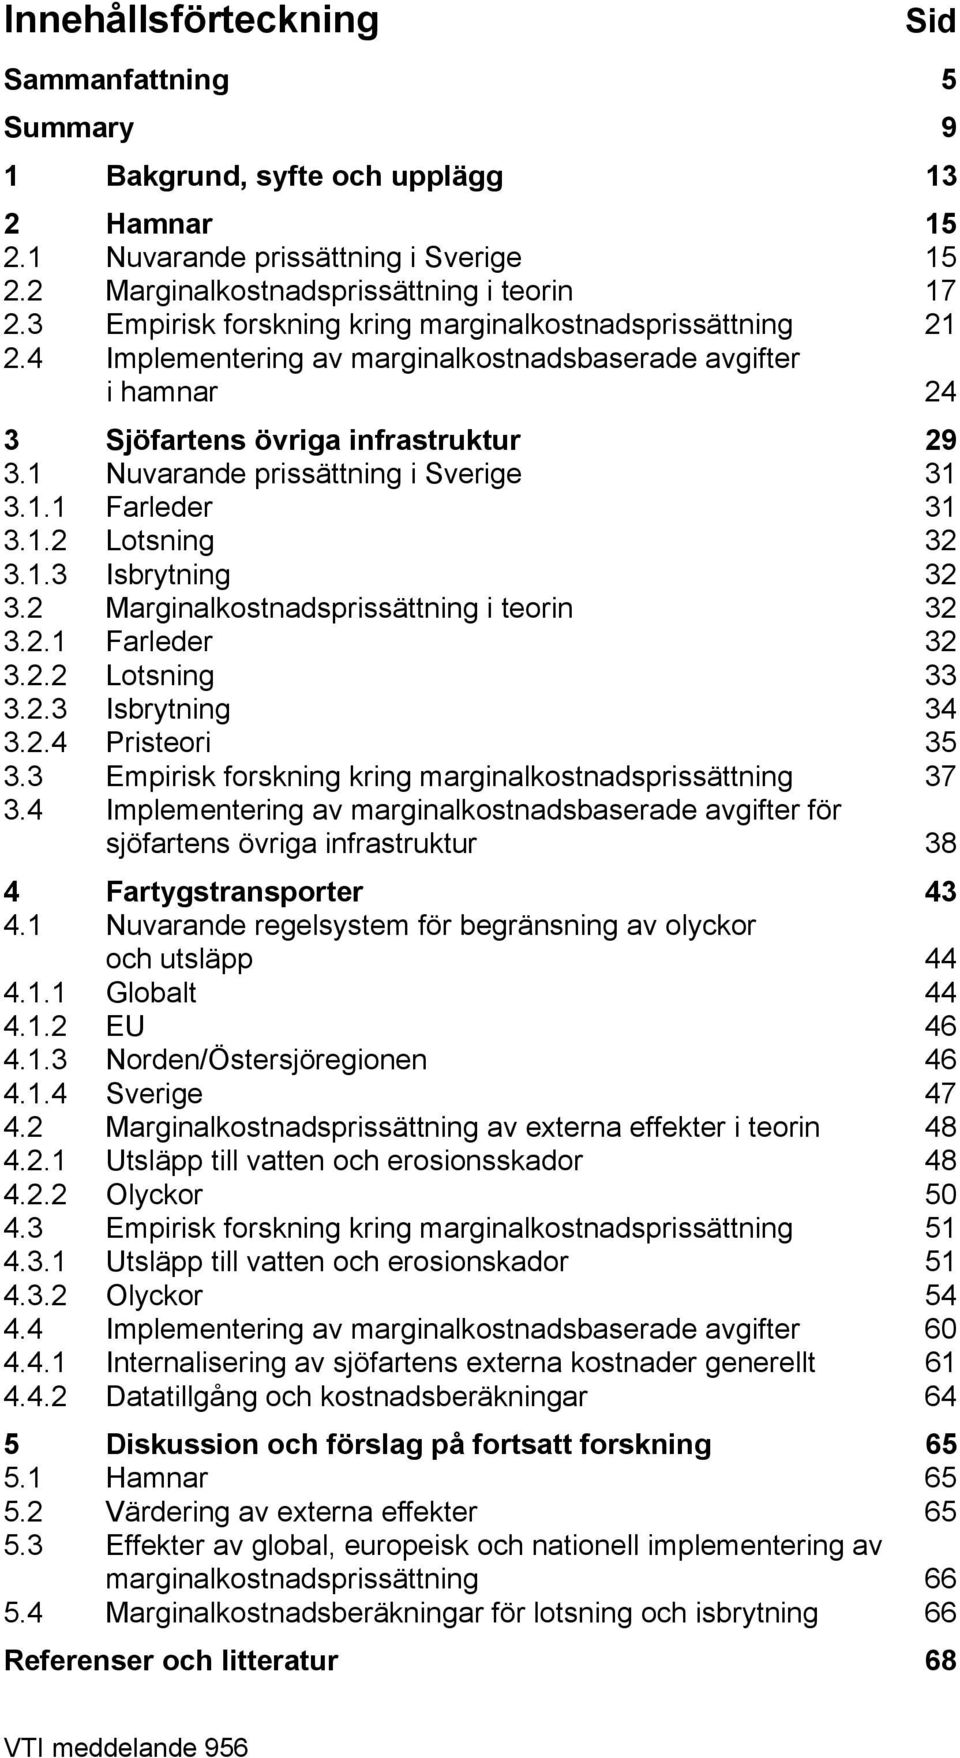 1 Nuvarande prissättning i Sverige 31 3.1.1 Farleder 31 3.1.2 Lotsning 32 3.1.3 Isbrytning 32 3.2 Marginalkostnadsprissättning i teorin 32 3.2.1 Farleder 32 3.2.2 Lotsning 33 3.2.3 Isbrytning 34 3.2.4 Pristeori 35 3.